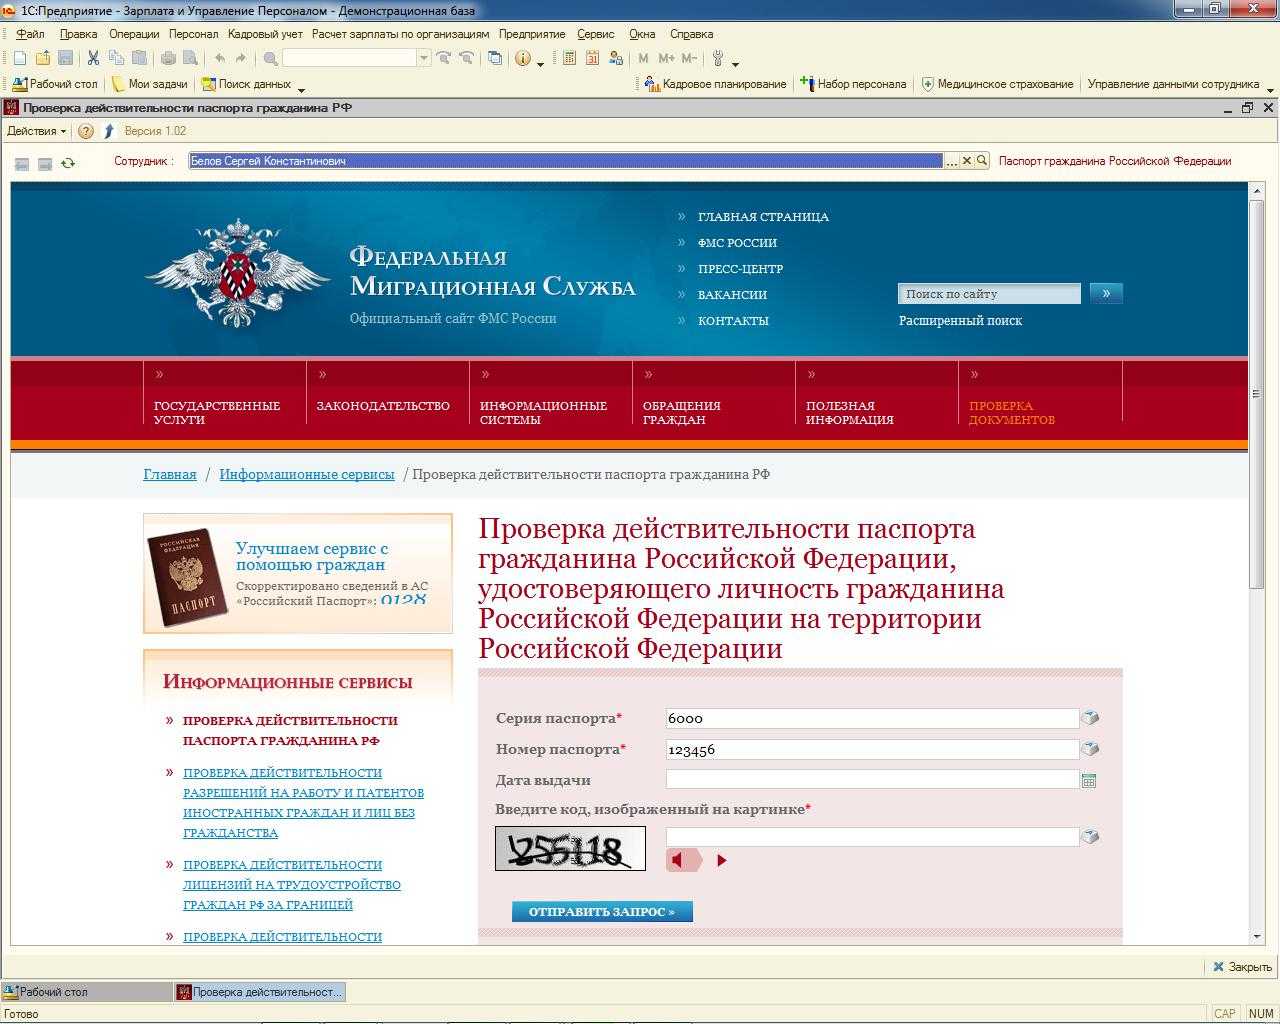 Сайт паспортной службы. База ФМС. База данных УФМС России.